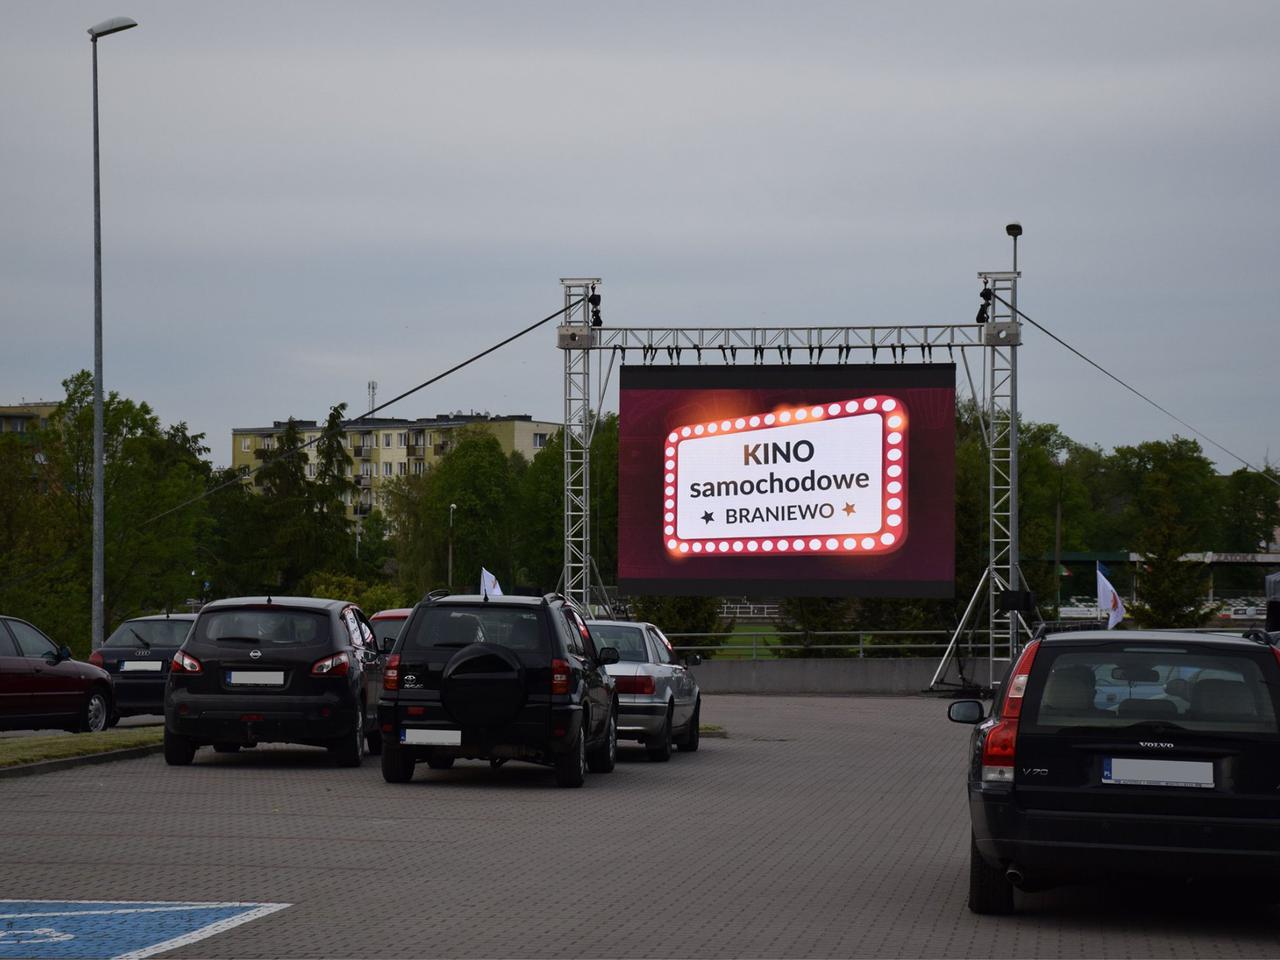  Było kino samochodowe. 06 czerwca Braniewskie Centrum Kultury zaprasza na tradycyjne seanse filmowe